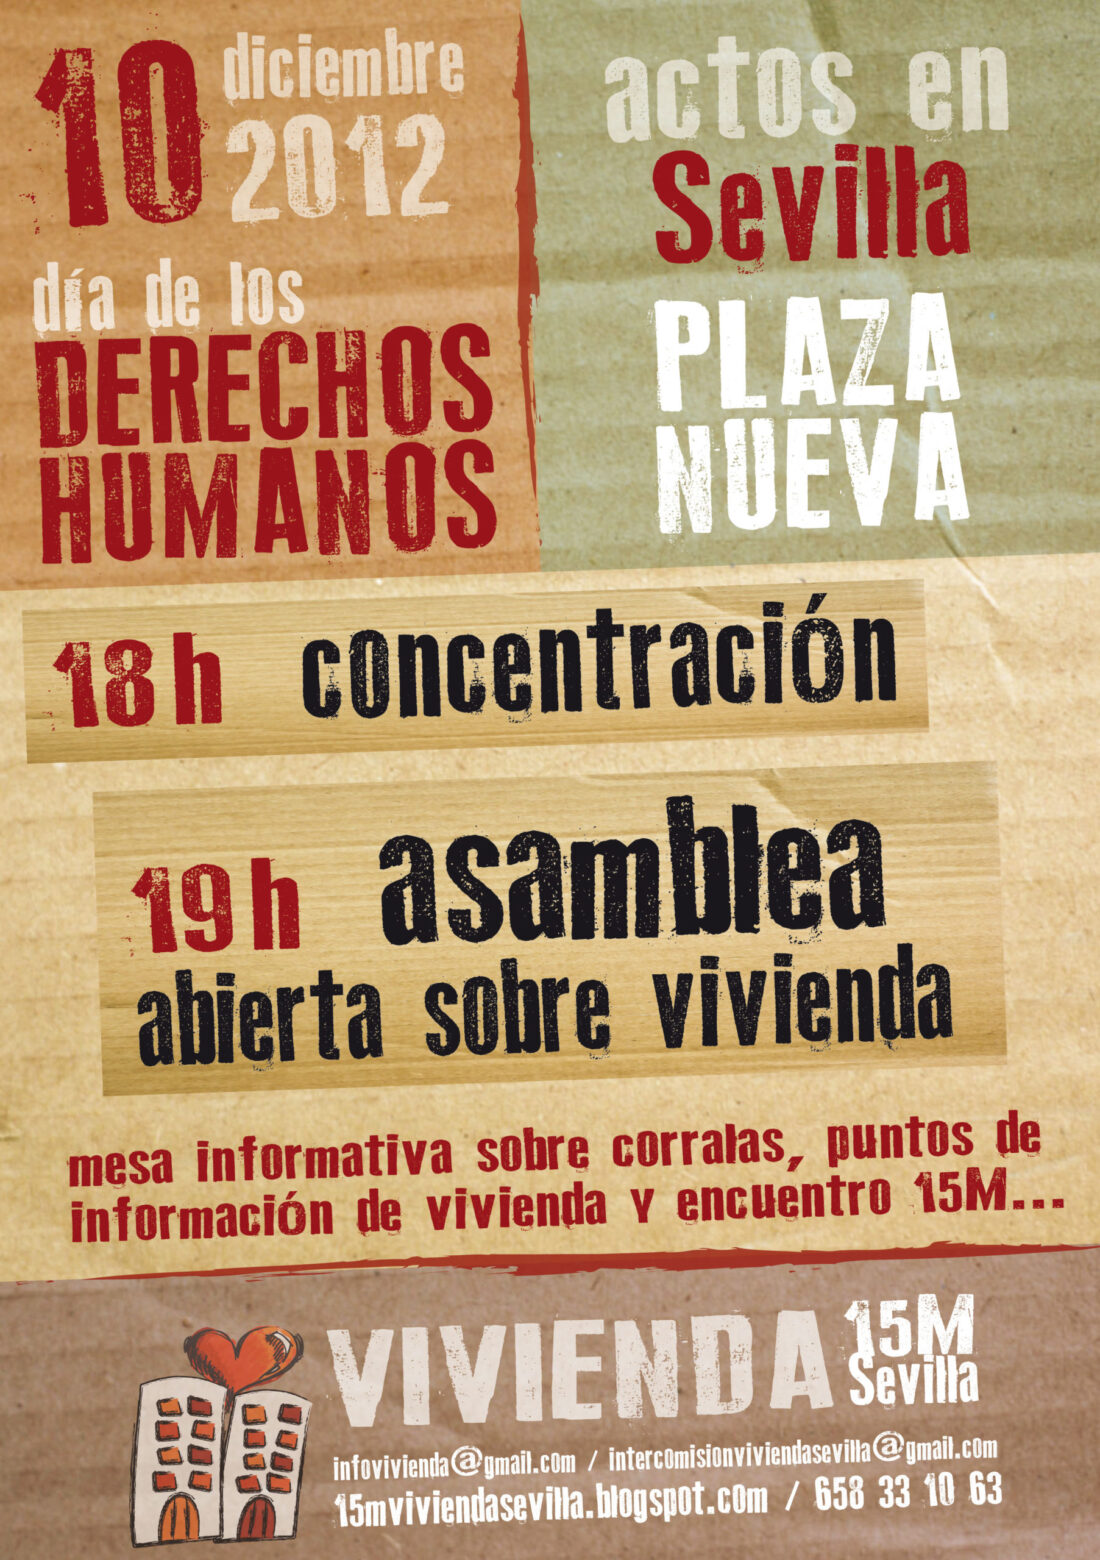 15M Vivienda Sevilla convoca actividades en Plaza Nueva con motivo del Día de los Derechos Humanos